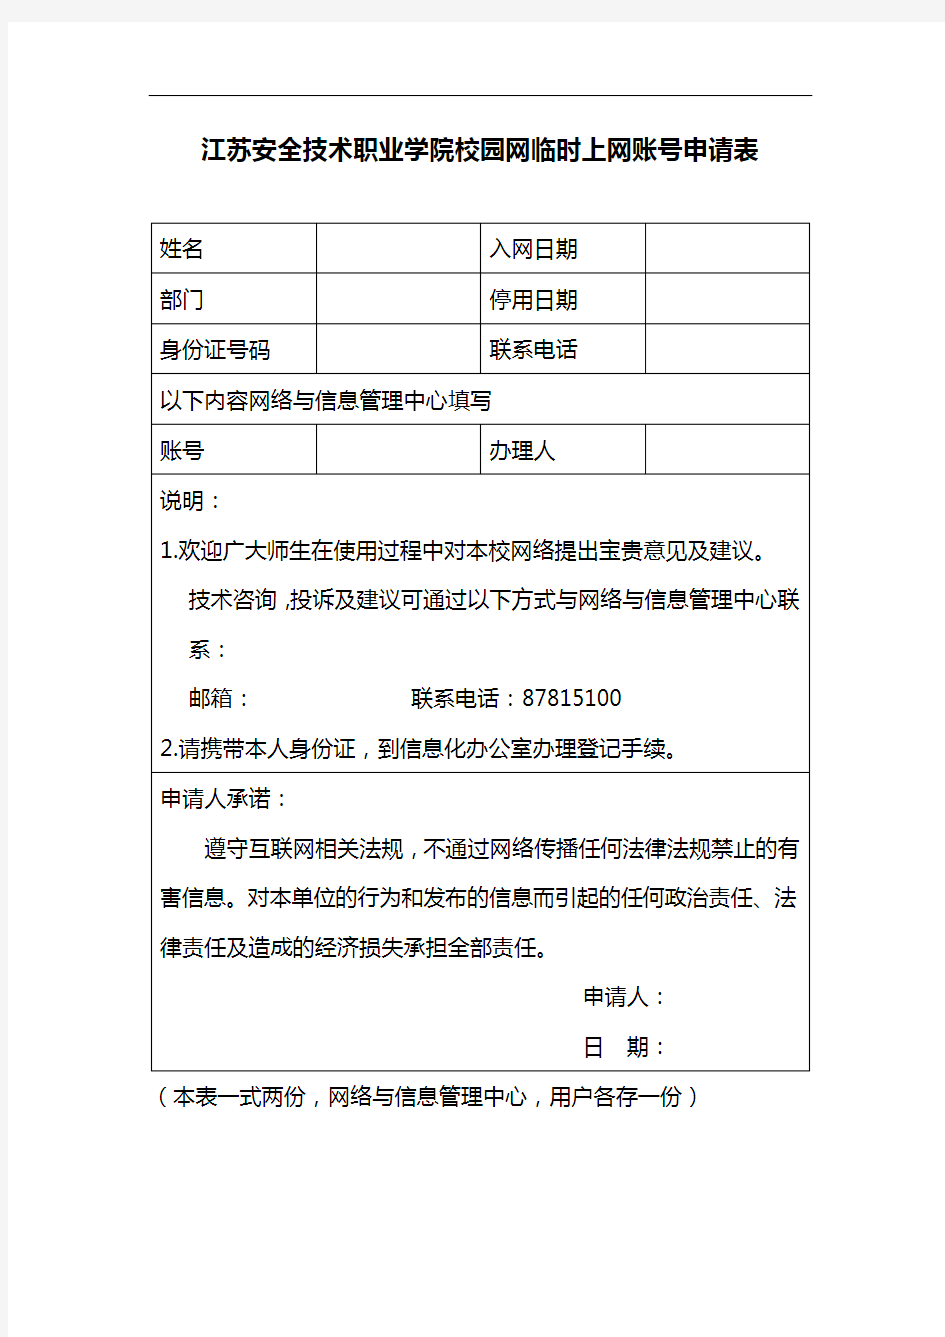 江苏安全技术职业学院校园网临时上网账号申请表